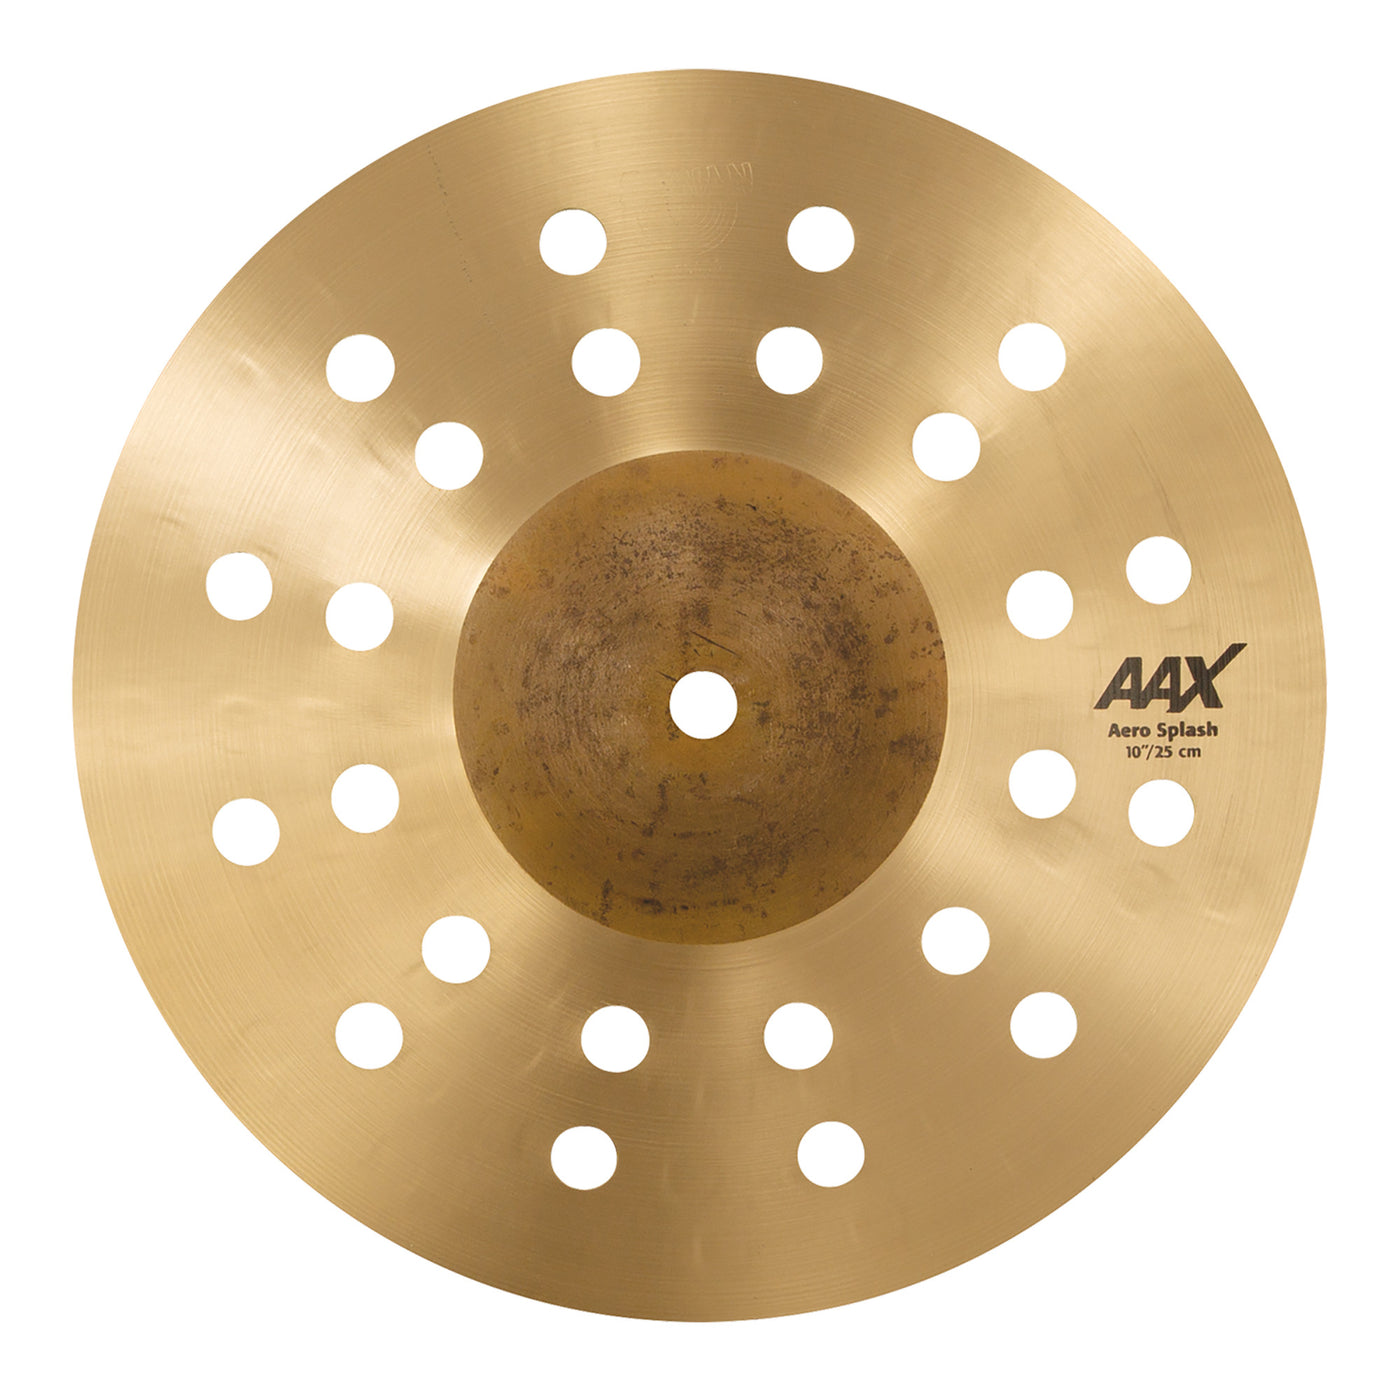 Sabian 10” AAX Aero Splash Cymbal